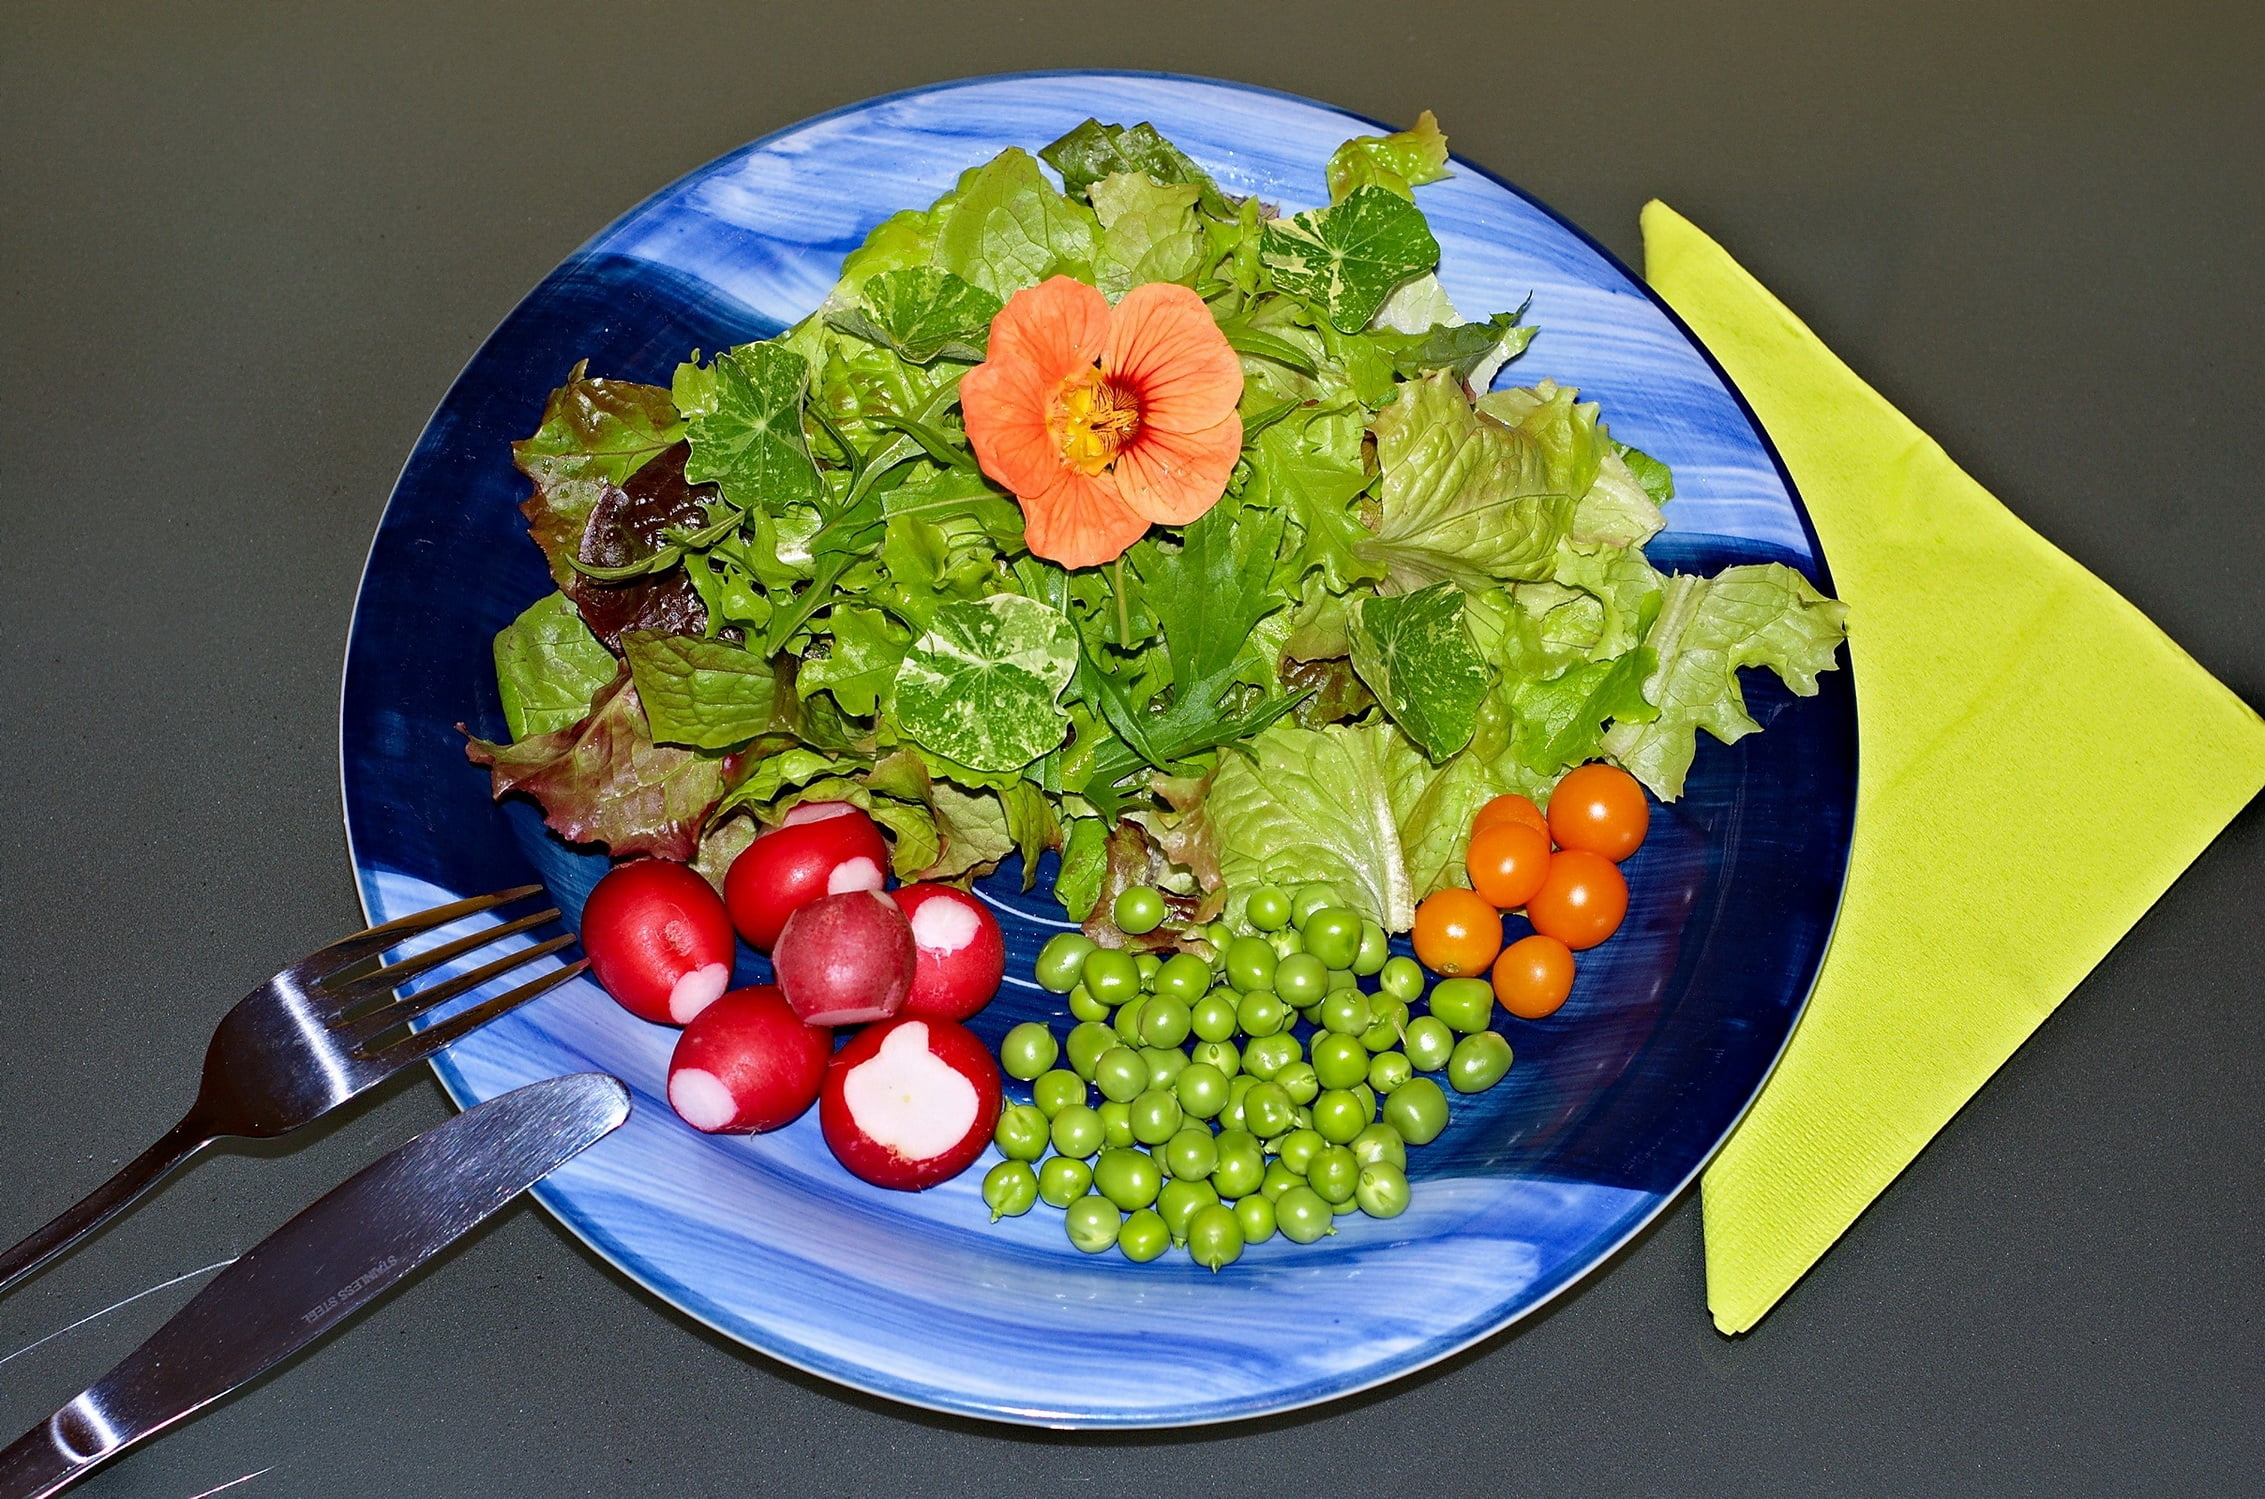 assorted vegetables, lettuce, radish, parsley, plate, food, tomato